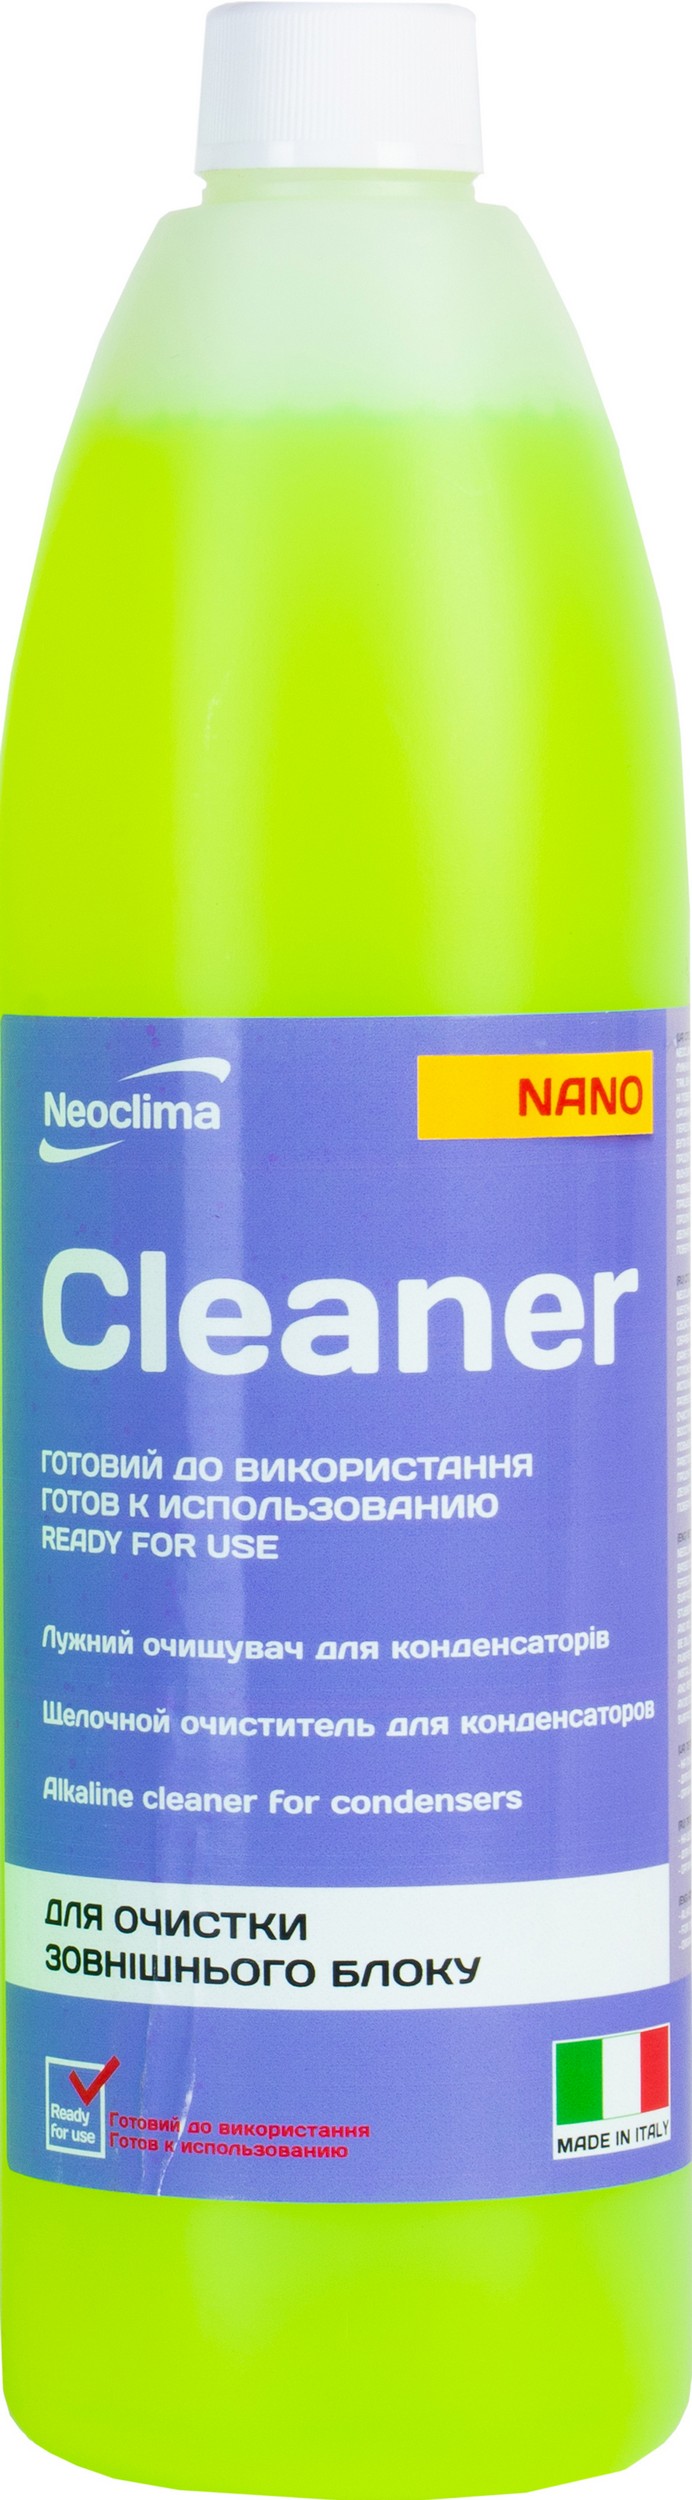 Отзывы очиститель для кондиционеров Neoclima Cleaner Nano 1 л, спрей в Украине